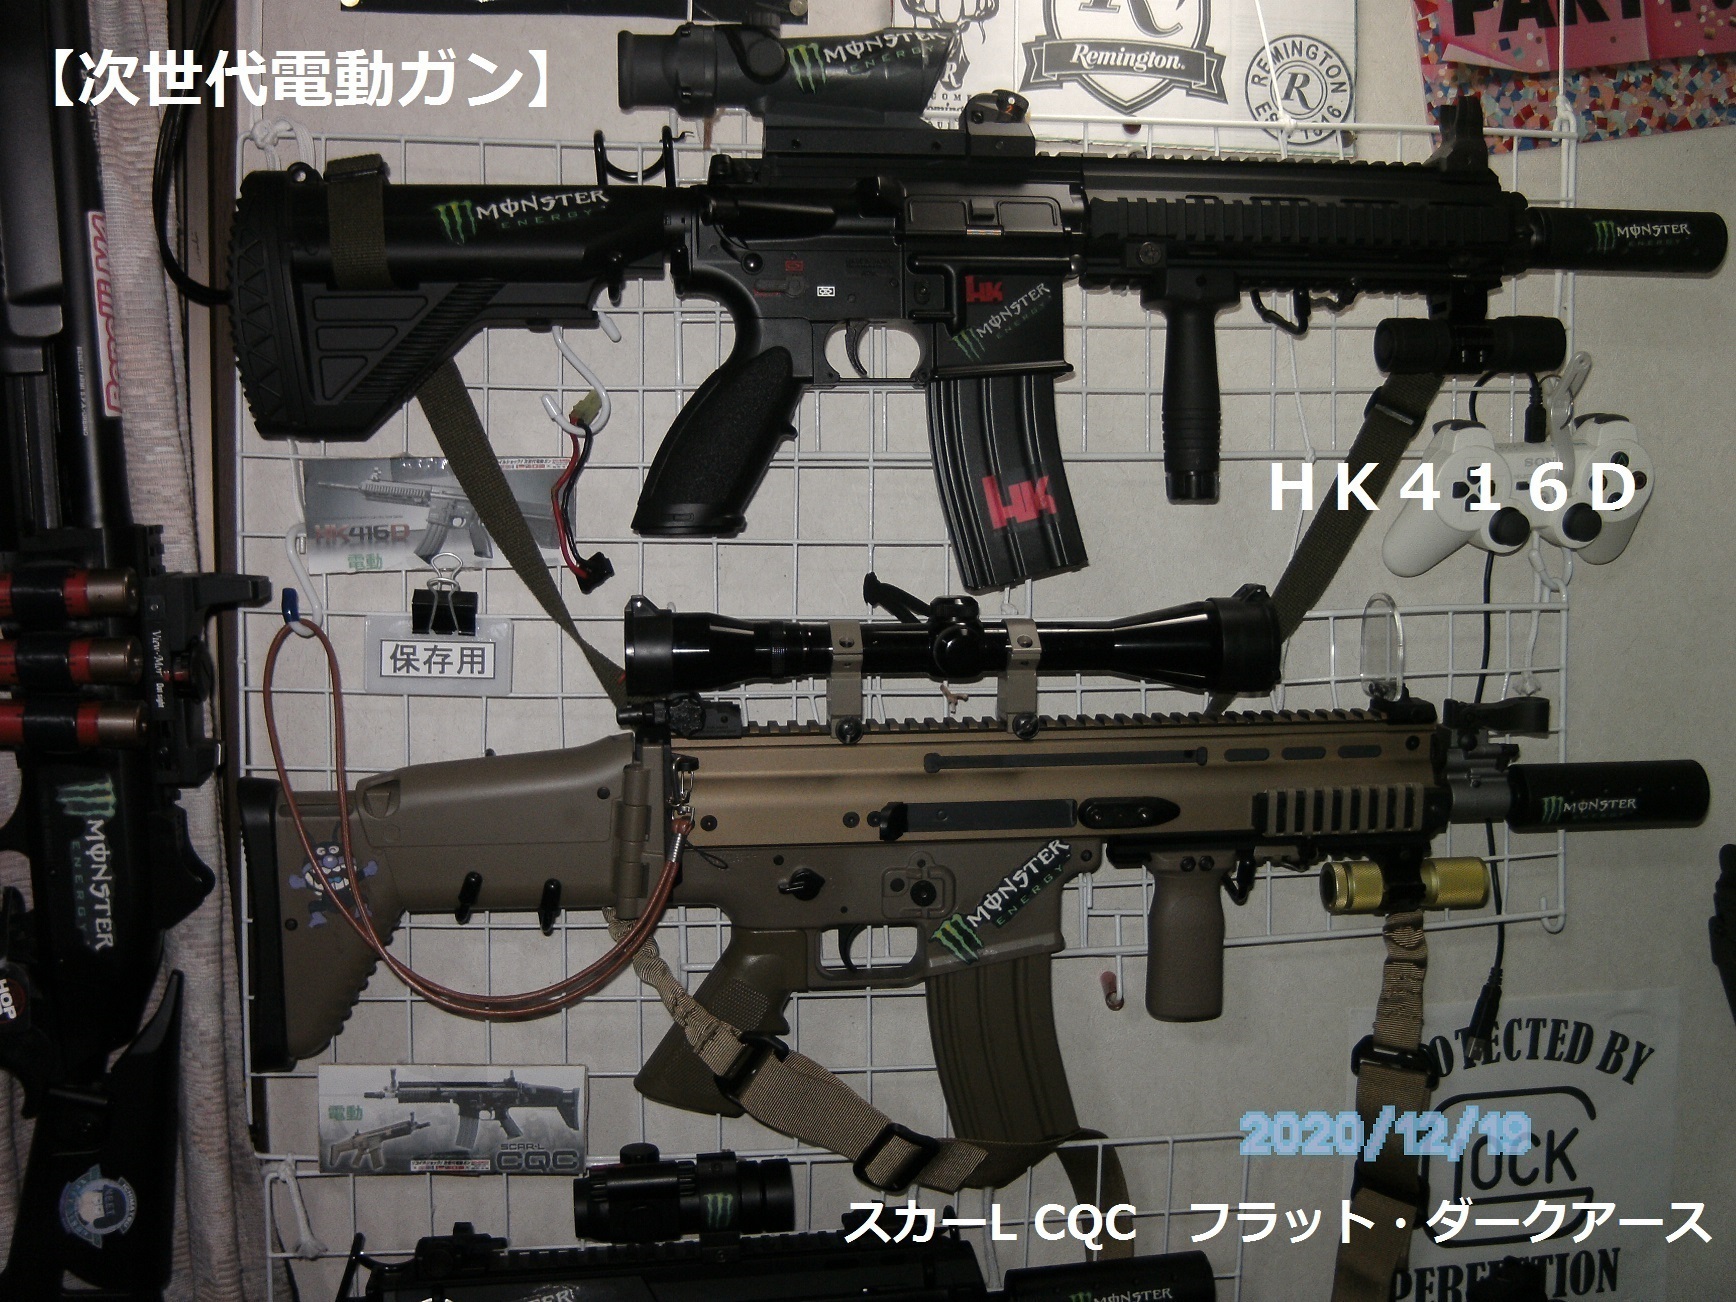 HK416D 東京マルイ 次世代 部屋撃ちのみ-